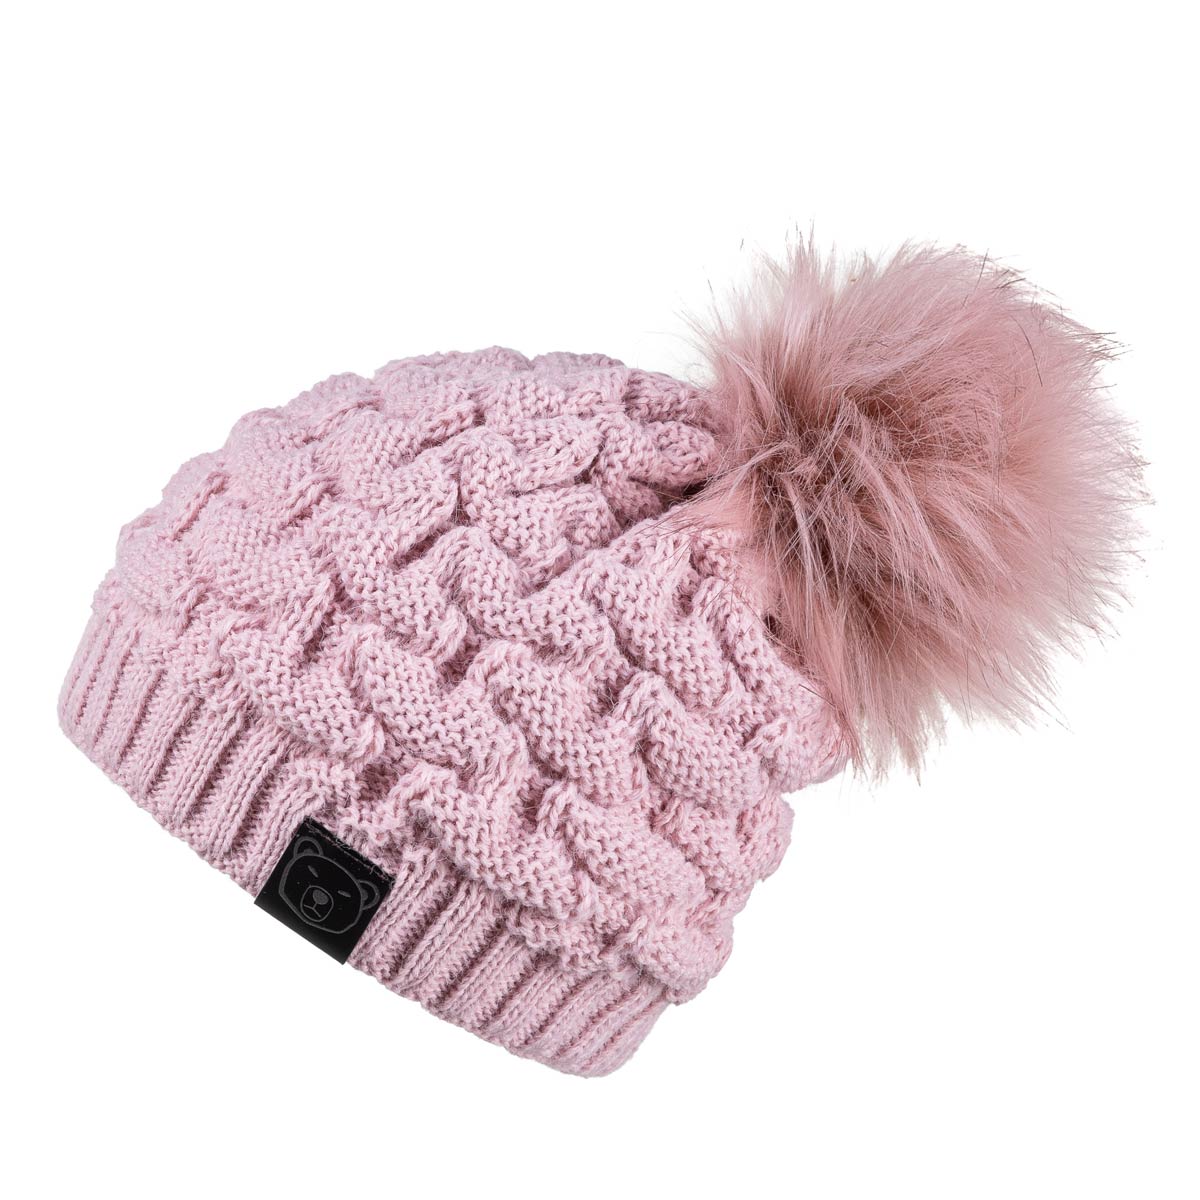 bonnet-epais-tricot-rose-fabrique-en-europe--CP-01600